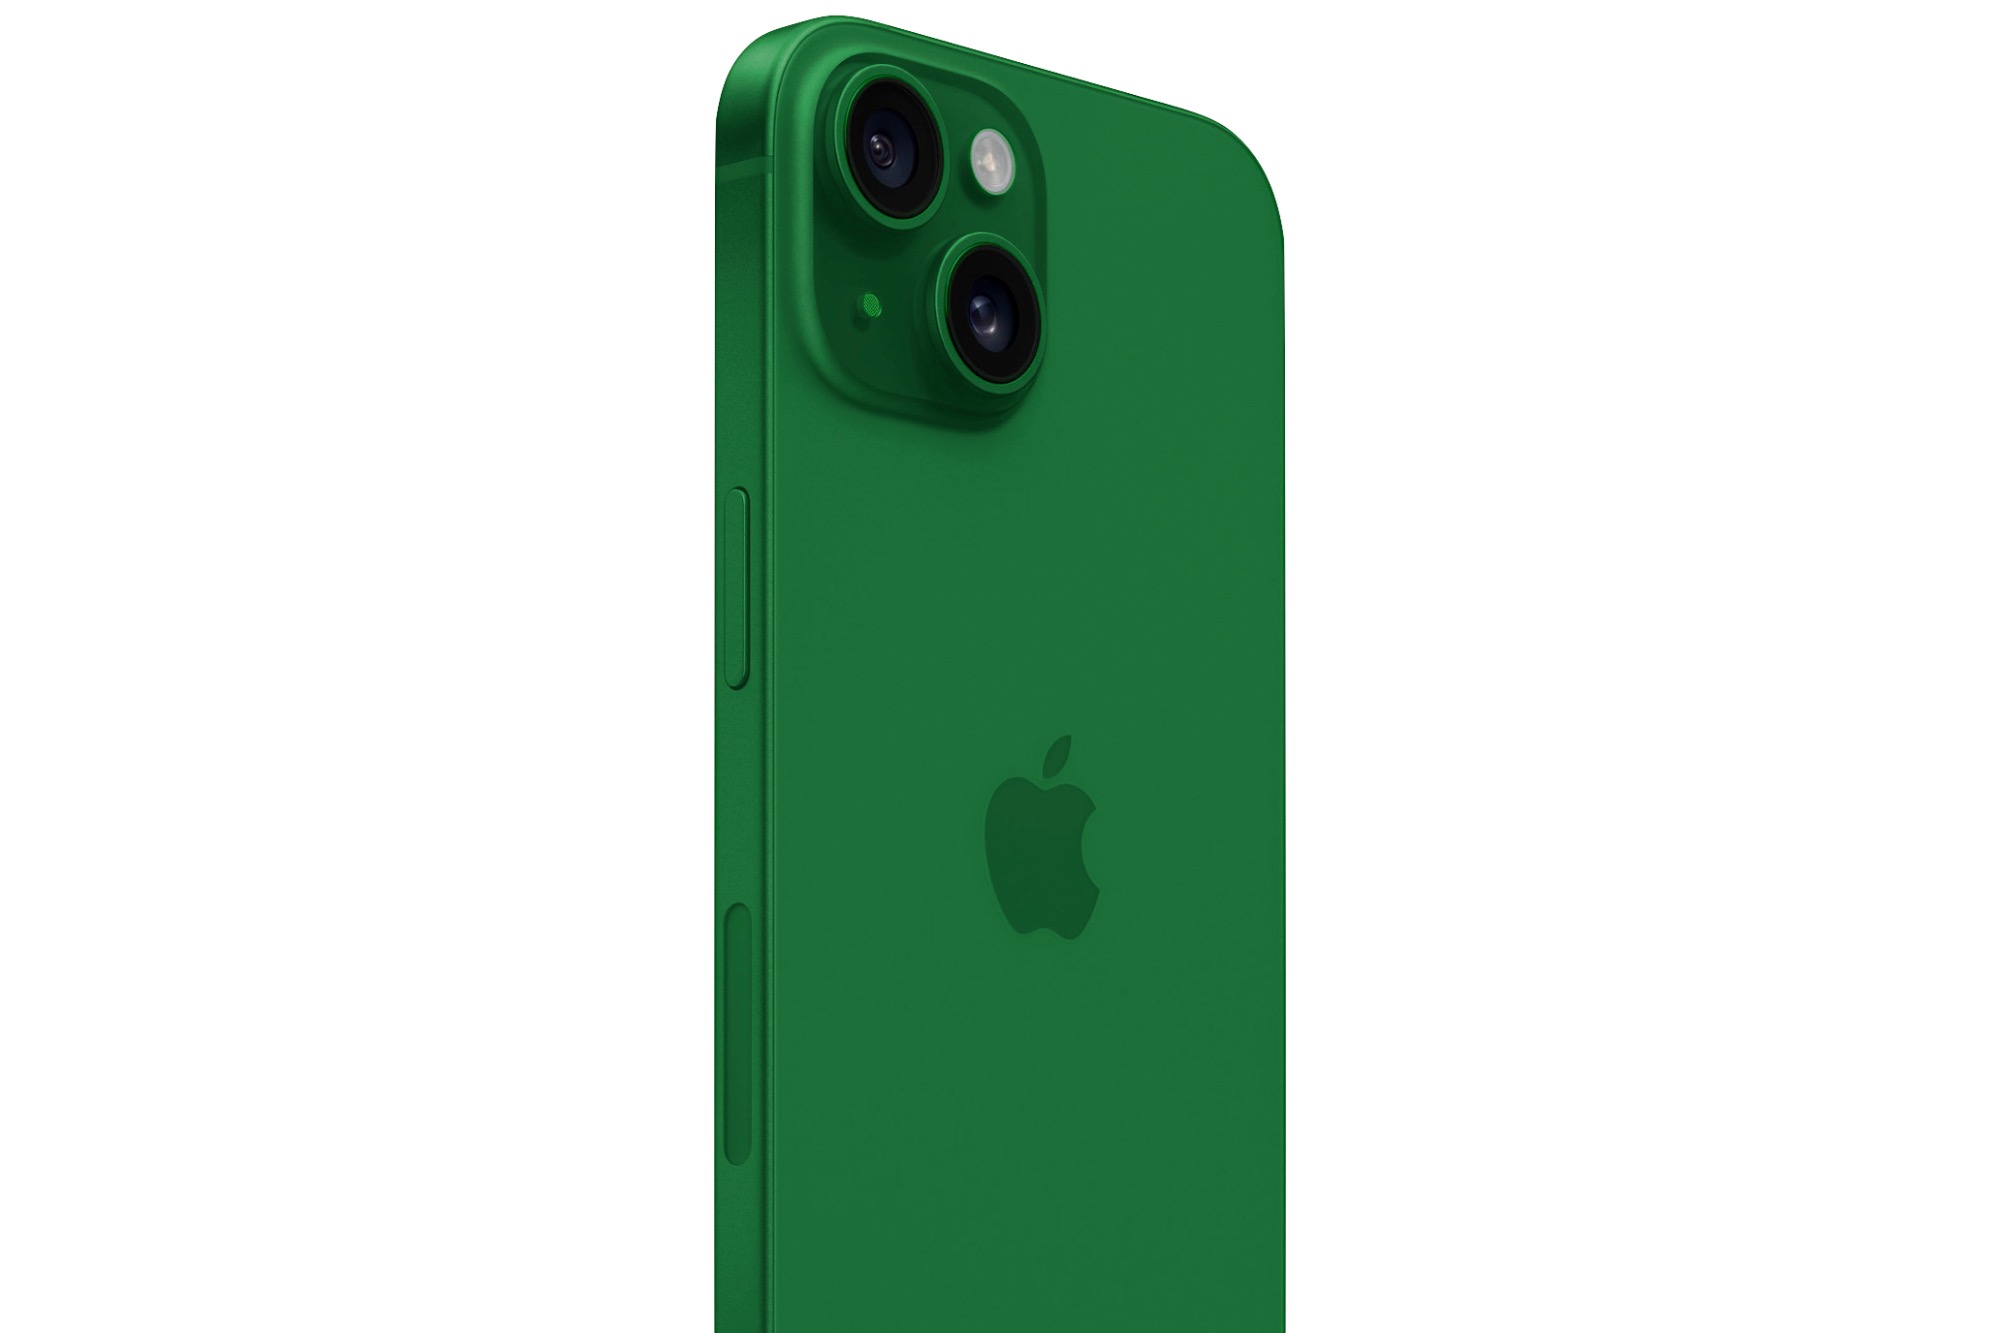 Así son los nuevos iPhone 13 Green y Alpine Green - Digital Trends Español